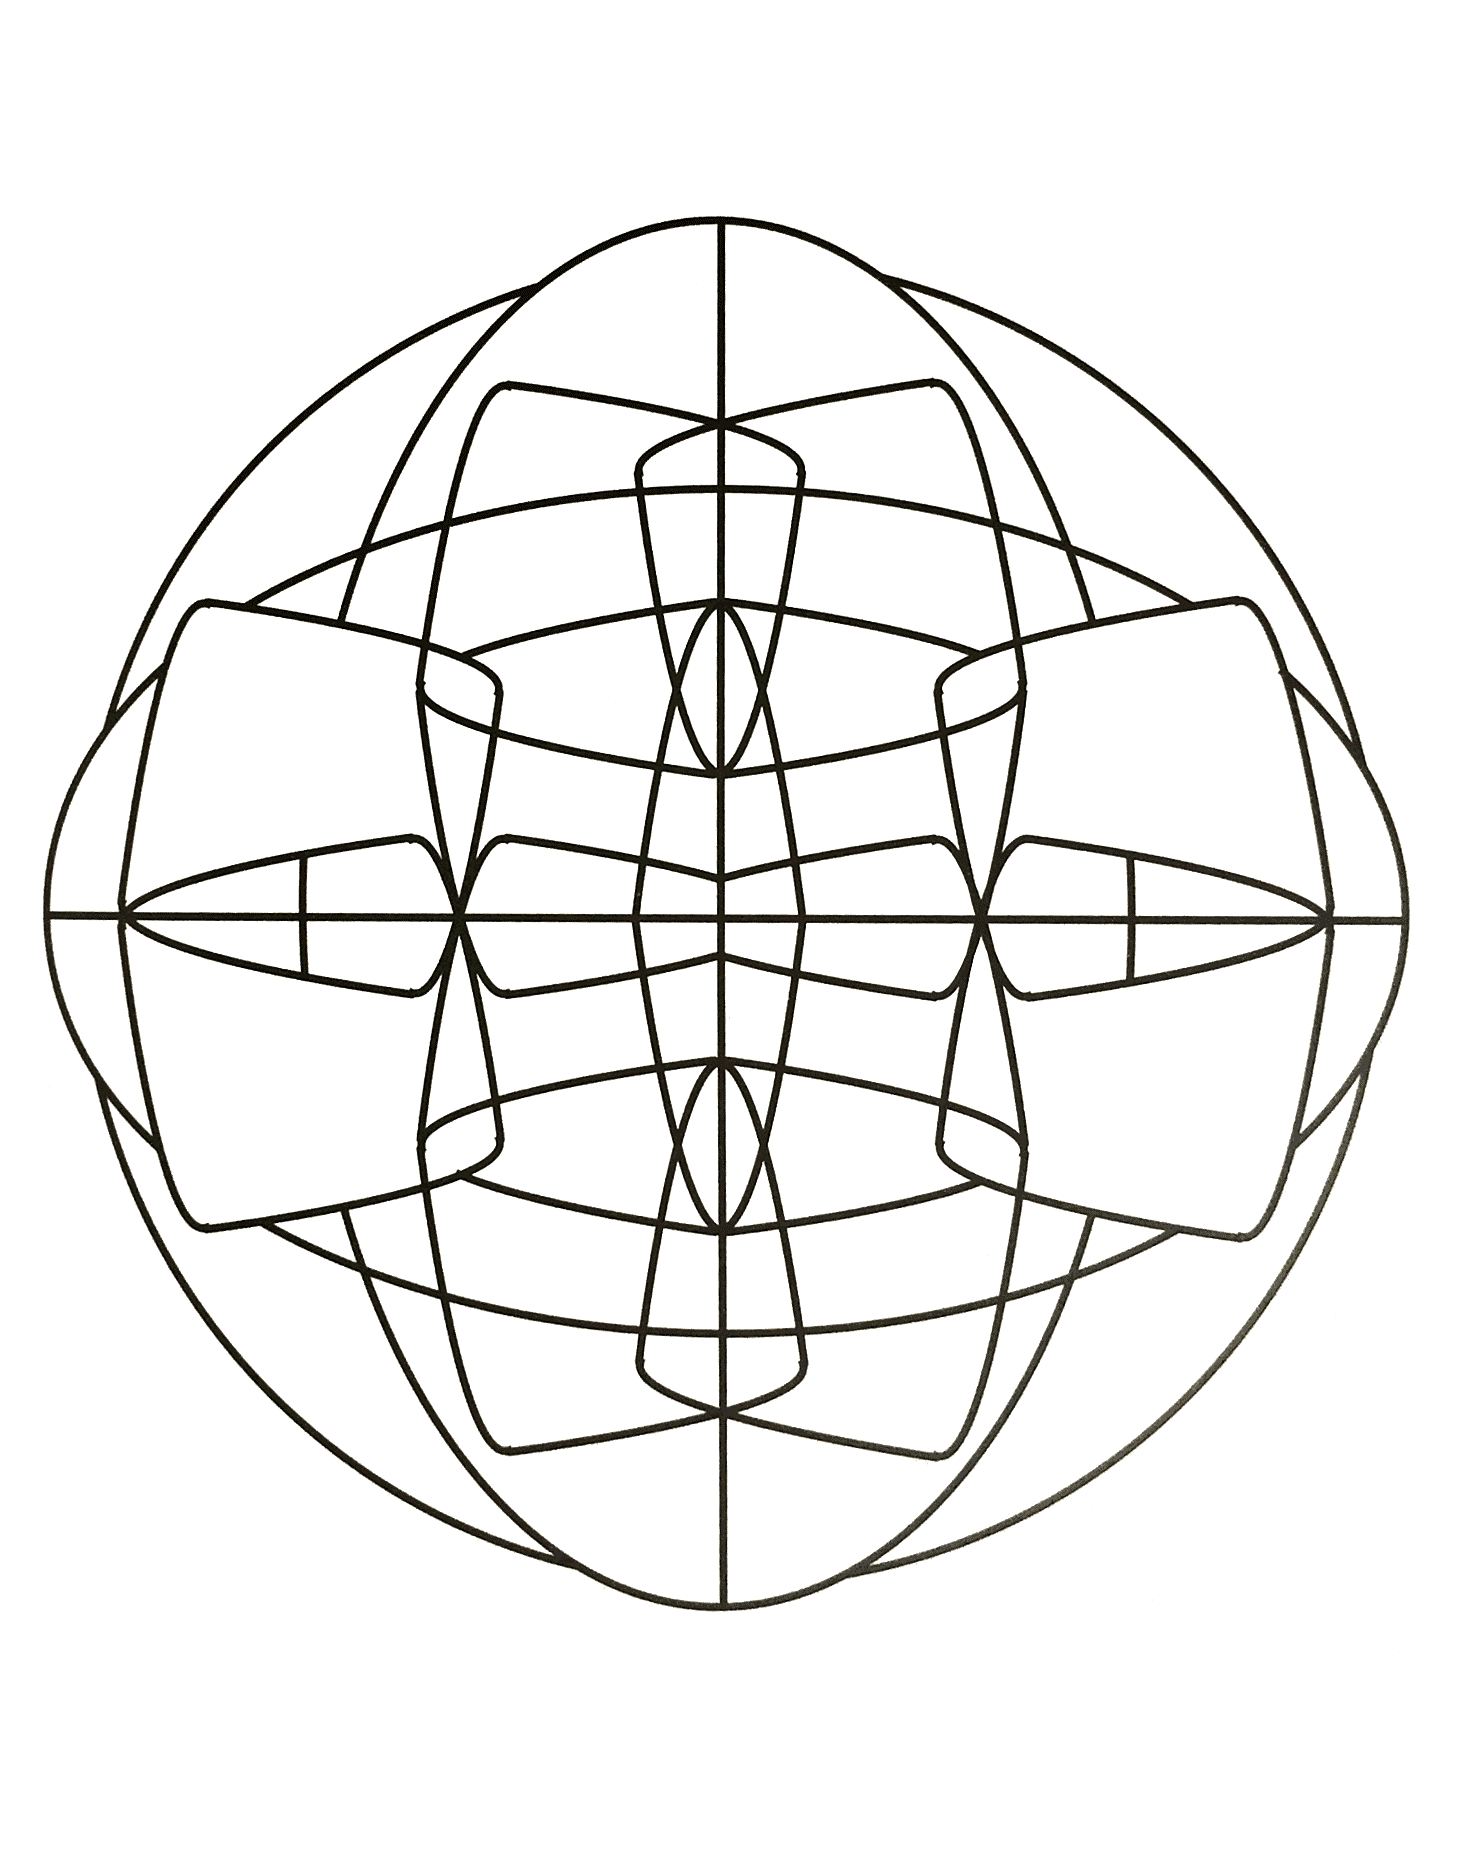 Wunderschönes symmetrisches und ziemlich abstraktes Mandala mit einem durchgehend grafischen Eindruck. Ziemlich einfach.